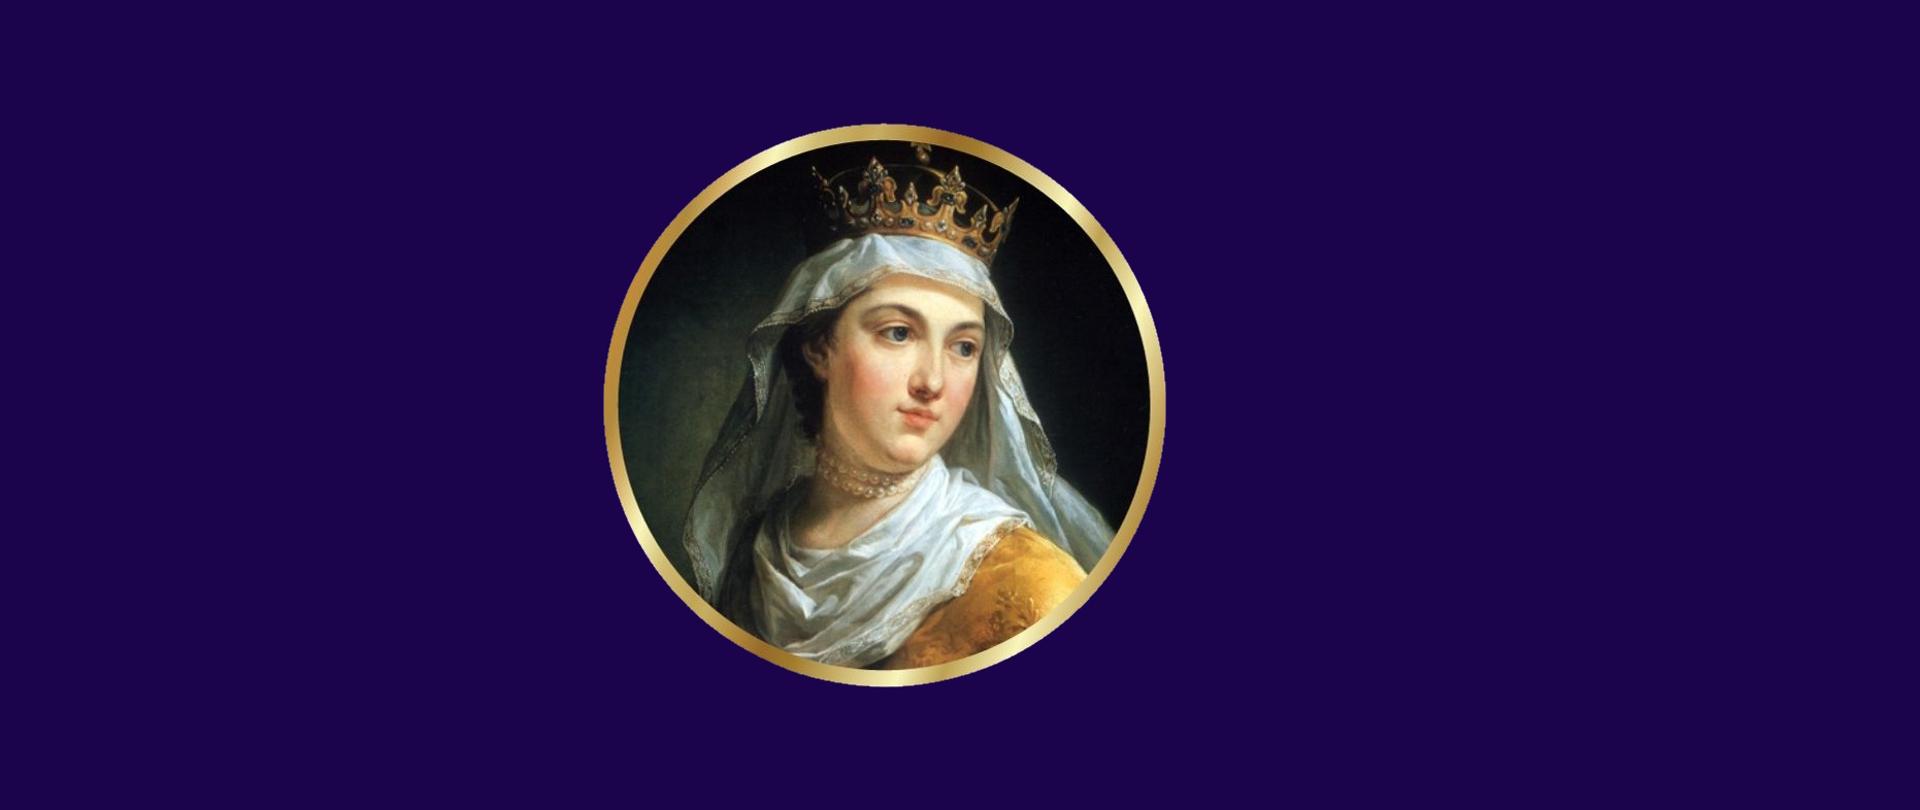 Portret kobiety z chustą i koroną na głowie w złotych szatach